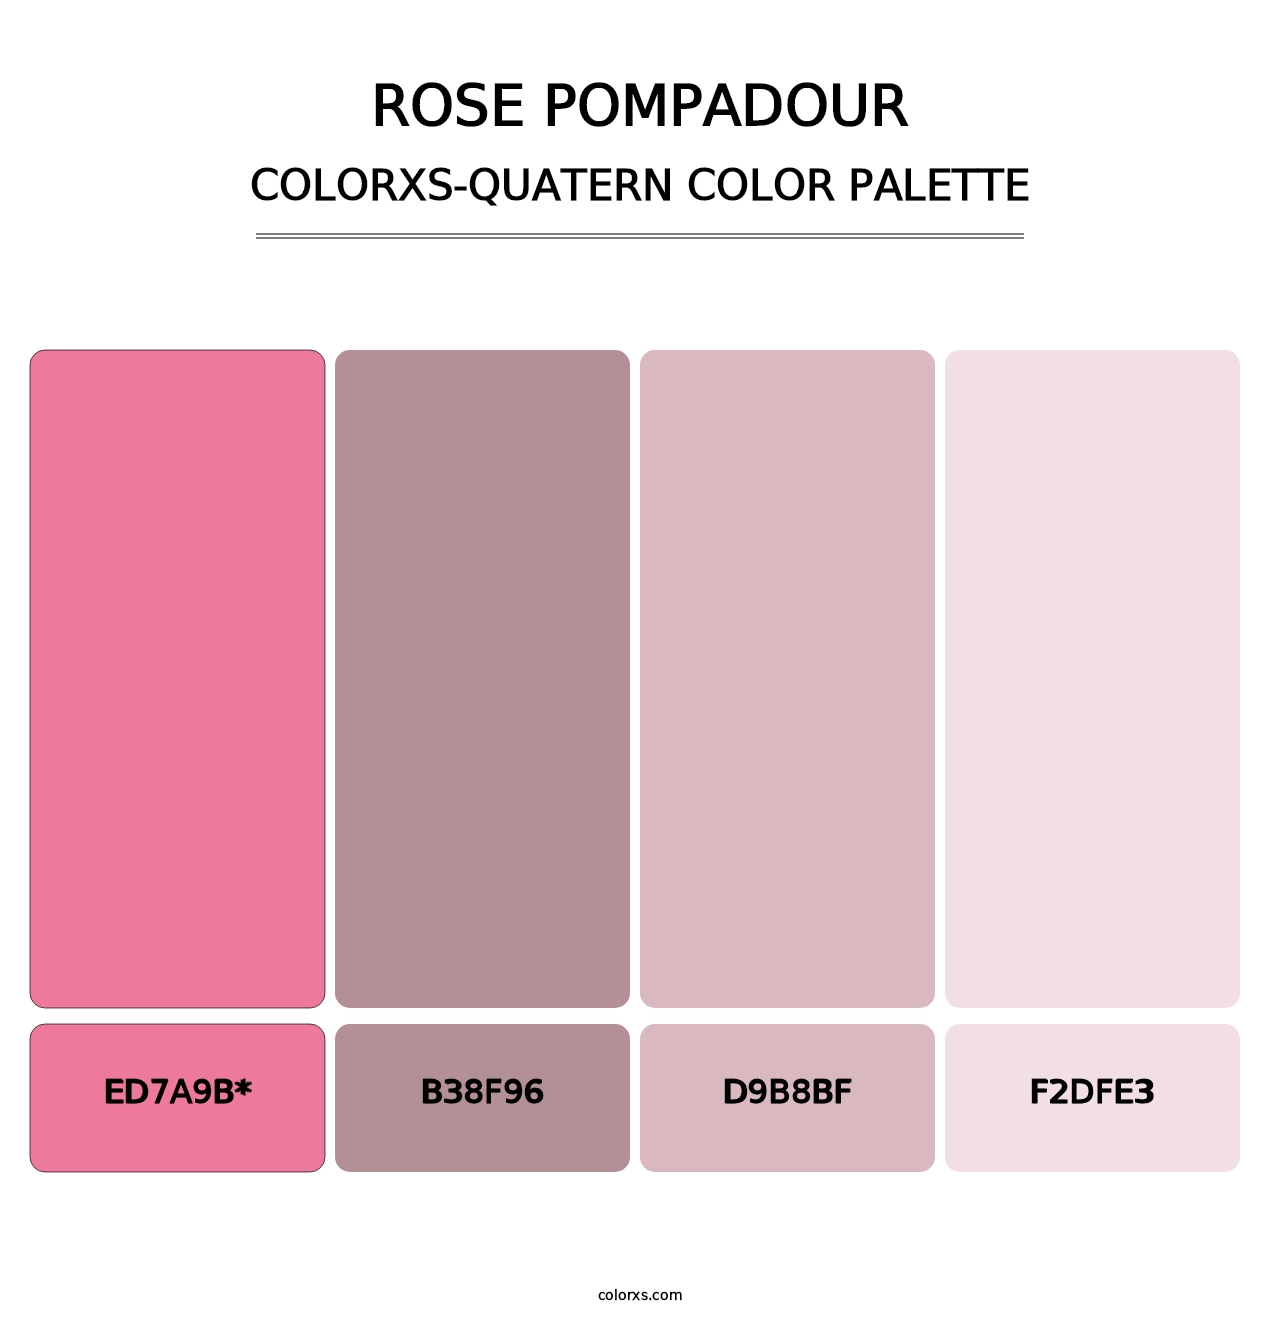 Rose Pompadour - Colorxs Quatern Palette